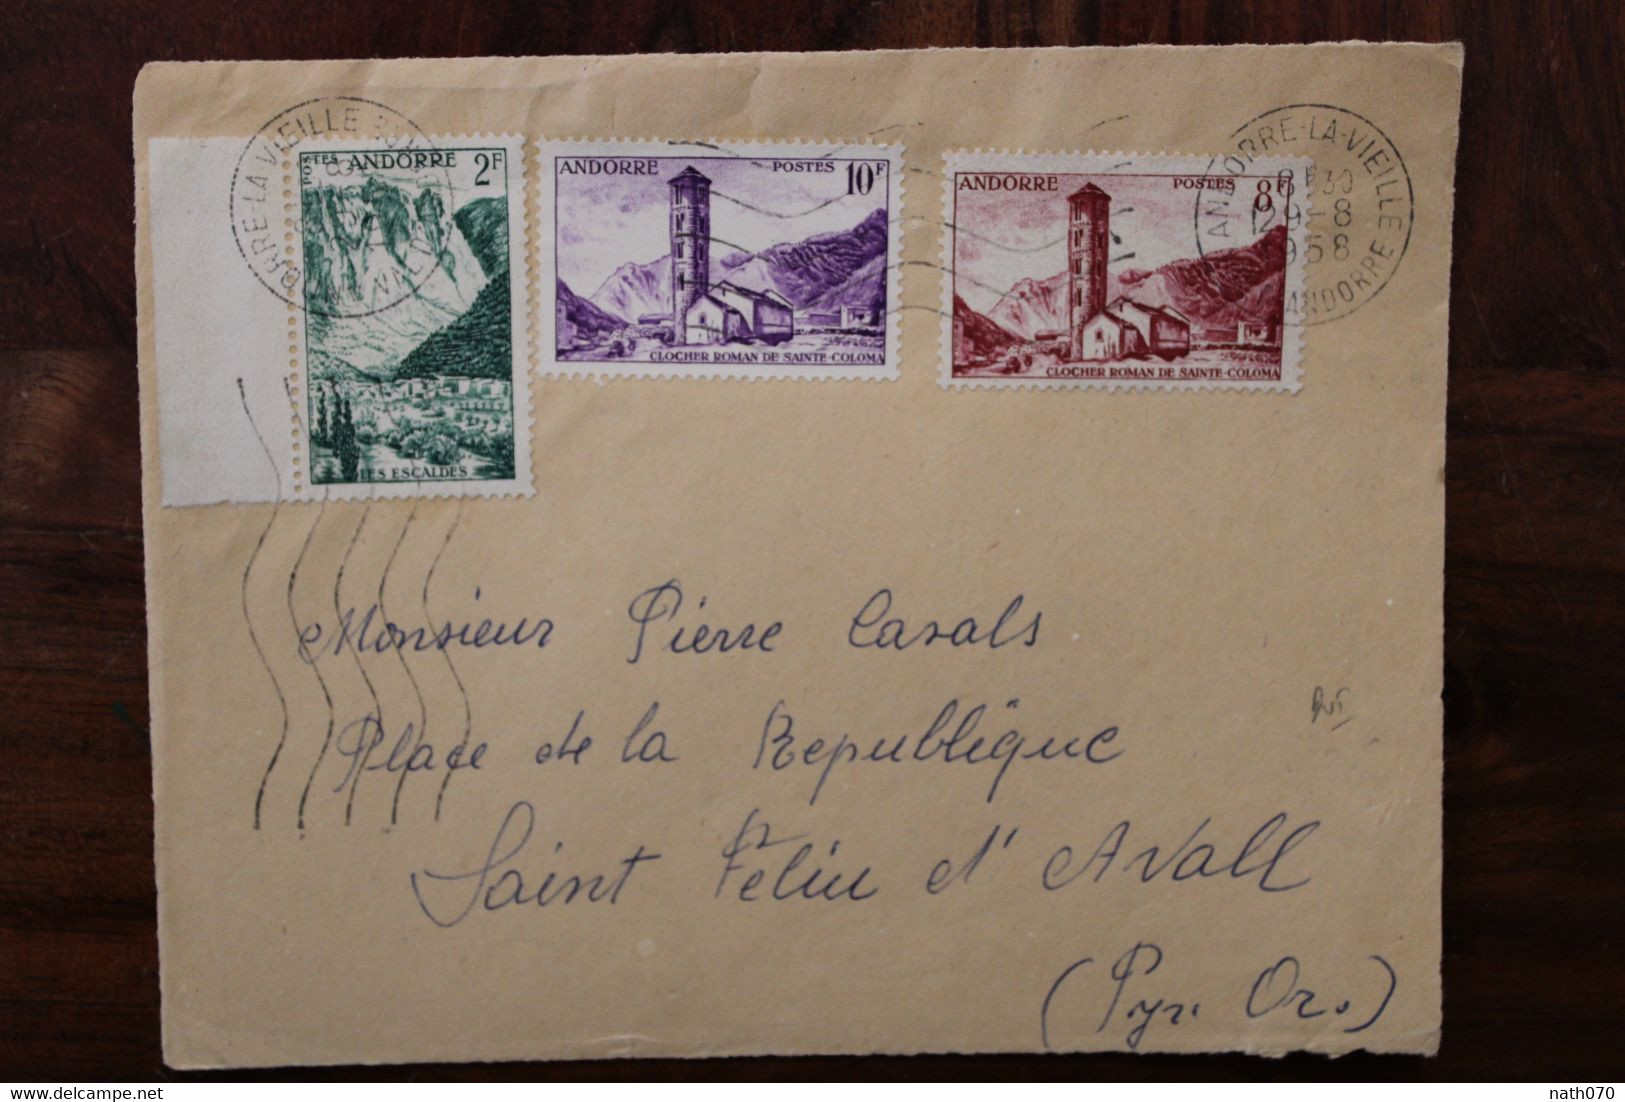 1958 Andorre Front D'enveloppe Cover Les Escaldes Clocher Roman De Ste Coloma - Storia Postale